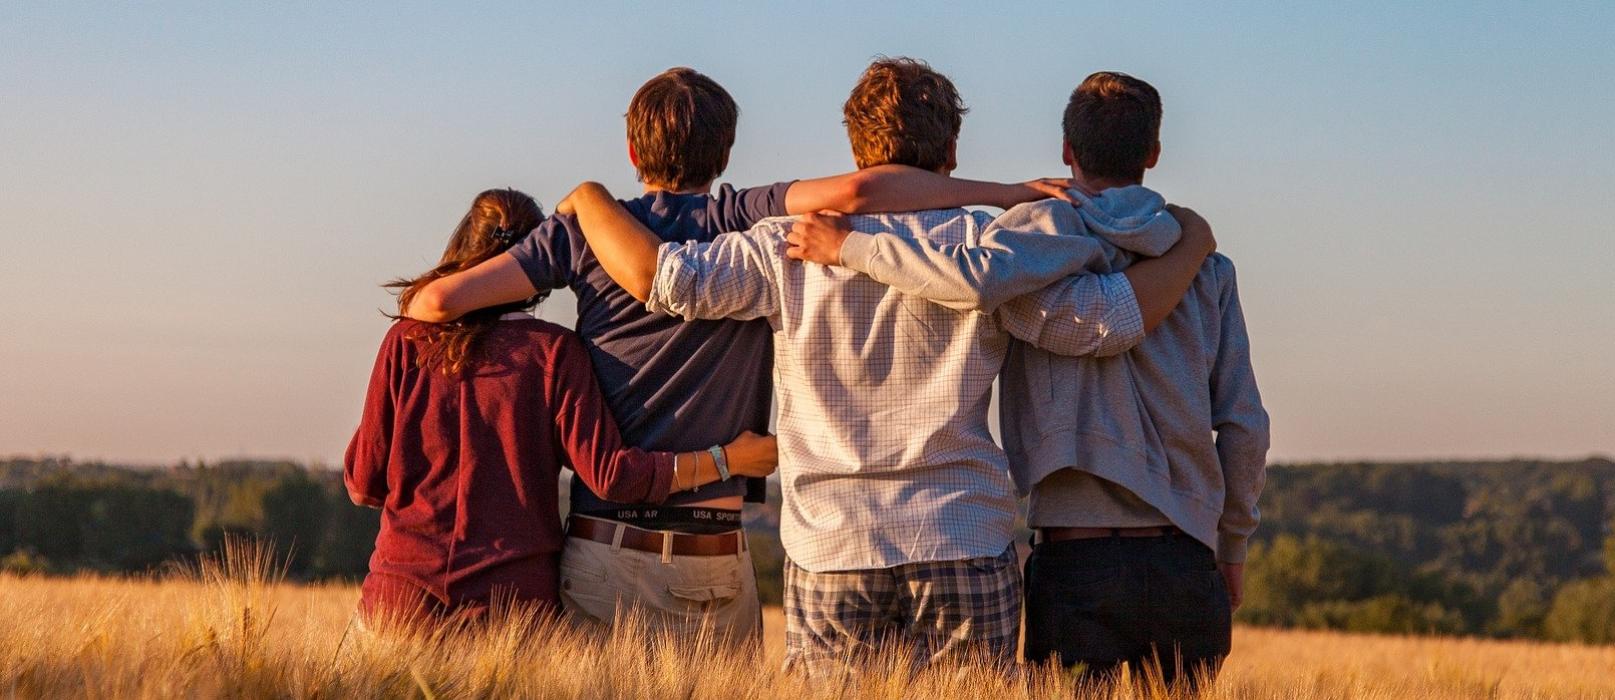 Foto: vier Freunde / Jugendliche umarmen sich, stehen auf einem Feld, von hinten fotografiert